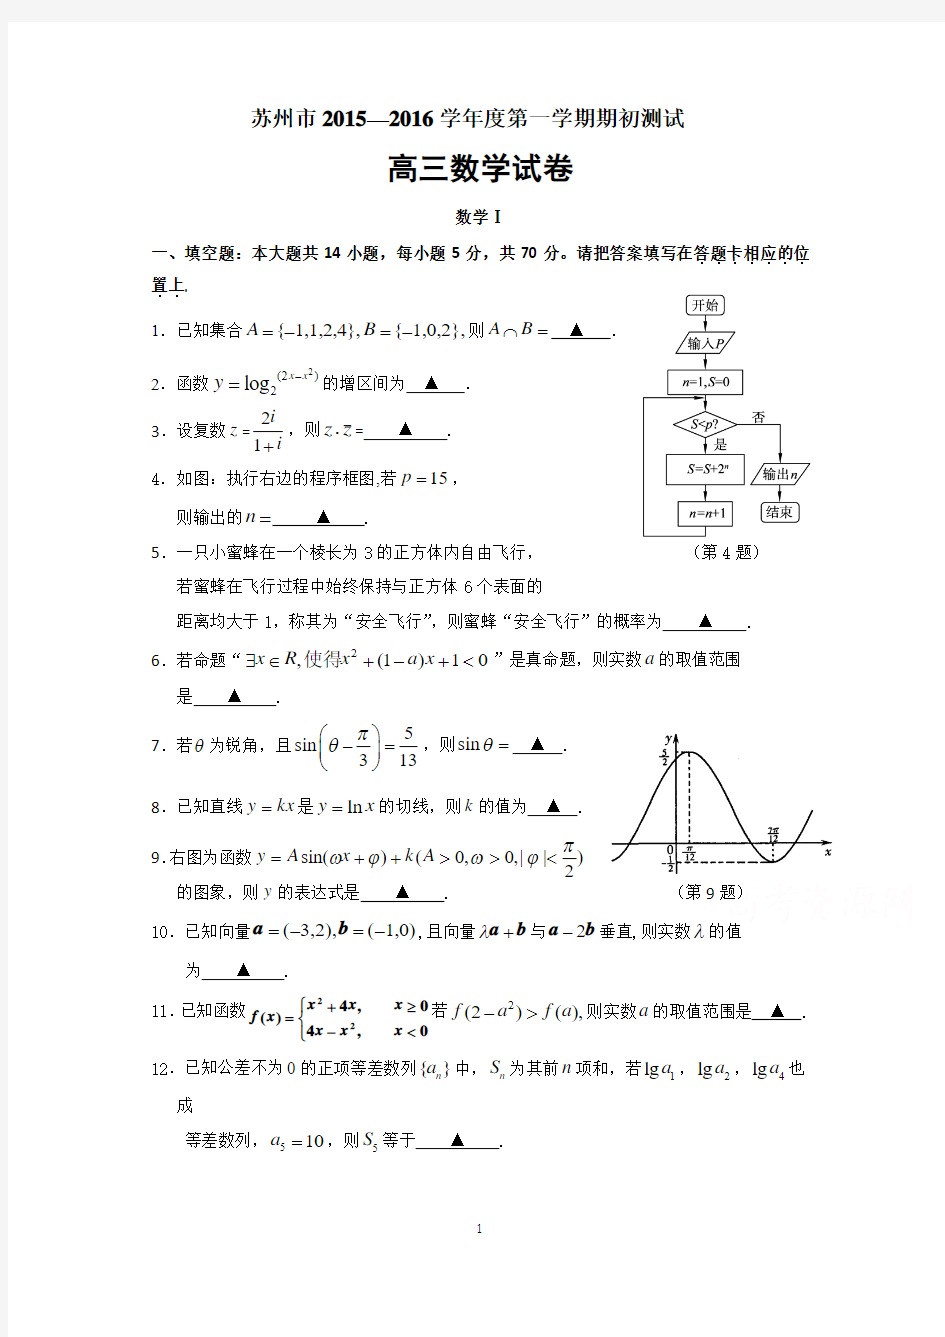 苏州2016届高三(应届班)上学期期初考试数学试题及答案